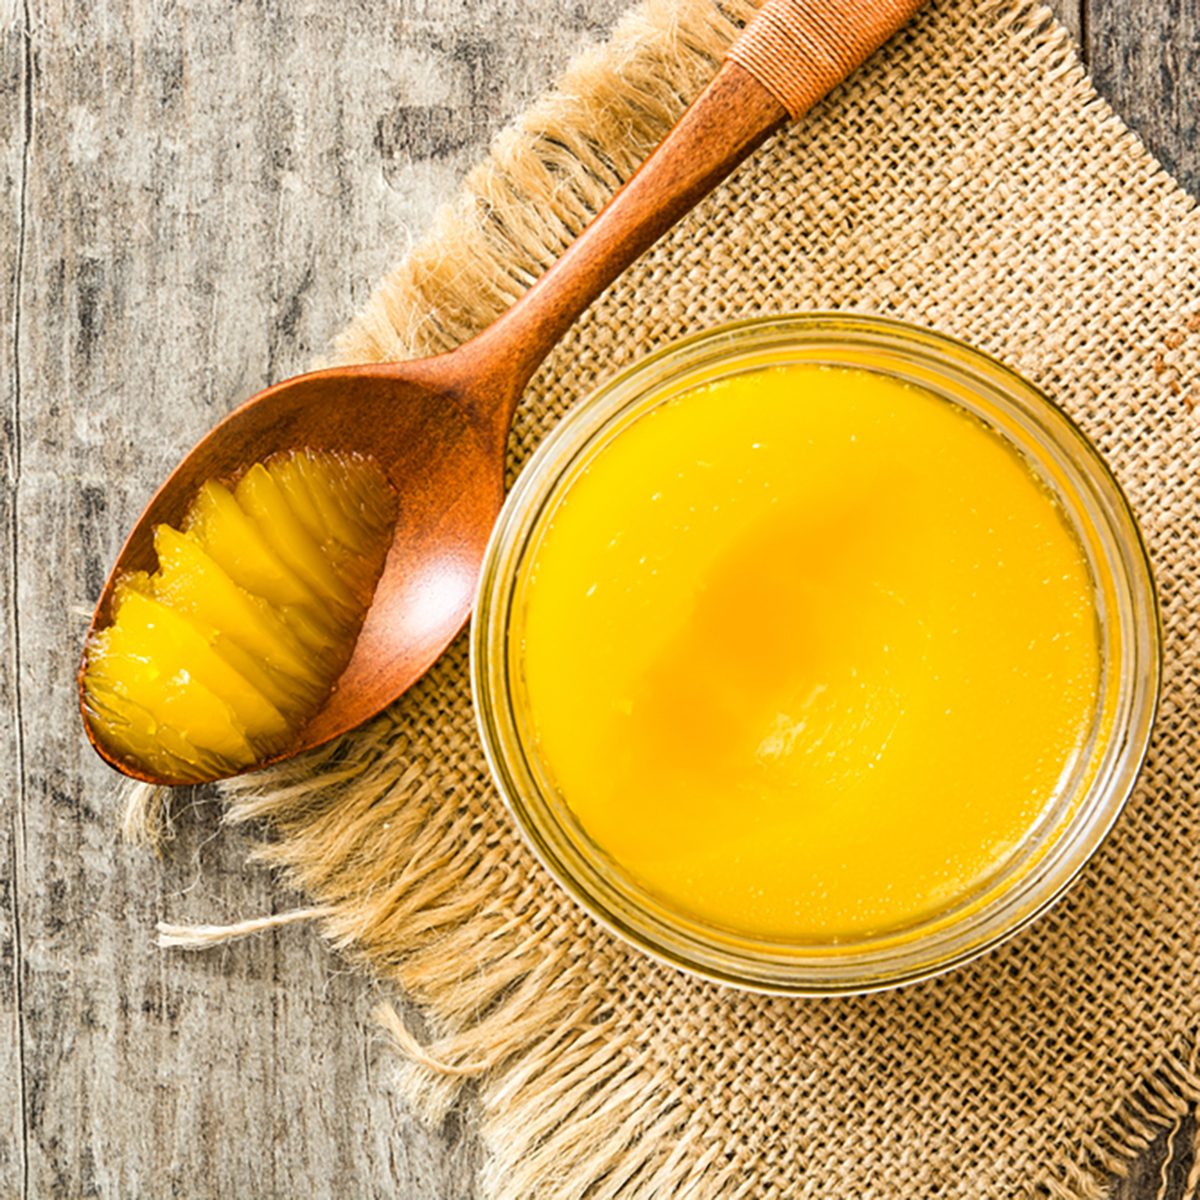 酥油或澄清黄油在罐中，木勺放在木桌上。